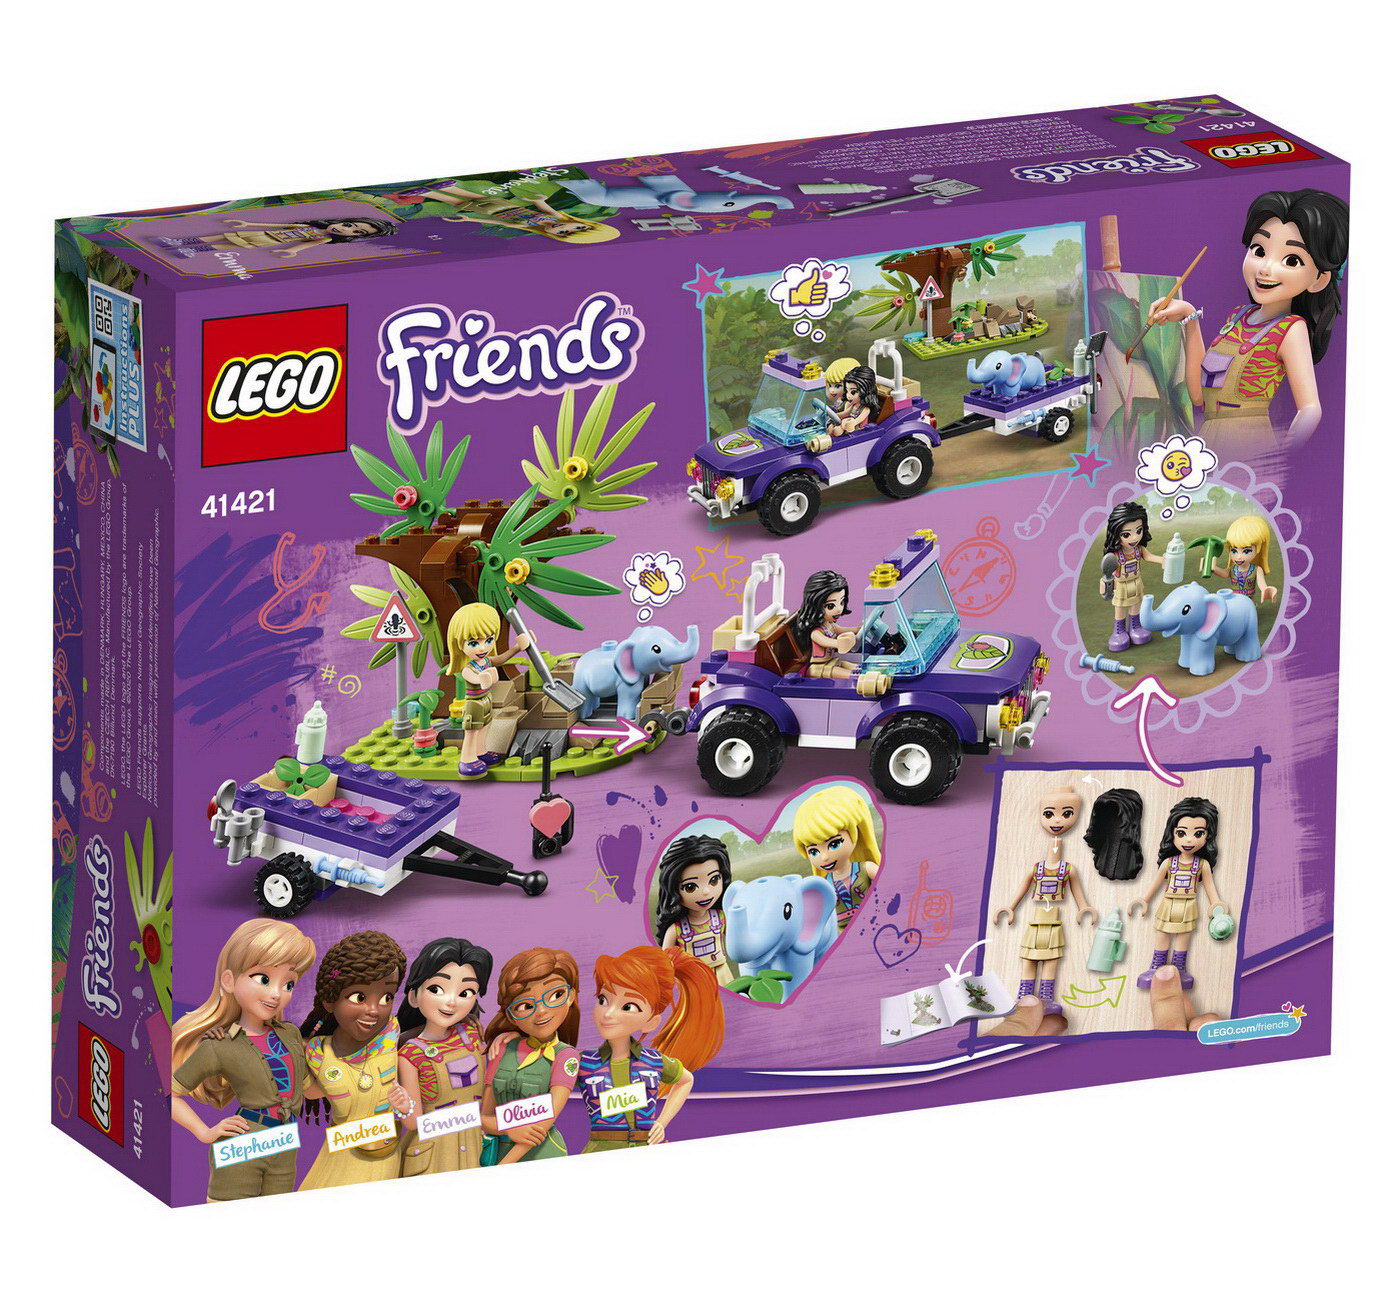 LEGO Friends 41421 - Rettung des Elefantenbabys mit Transporter